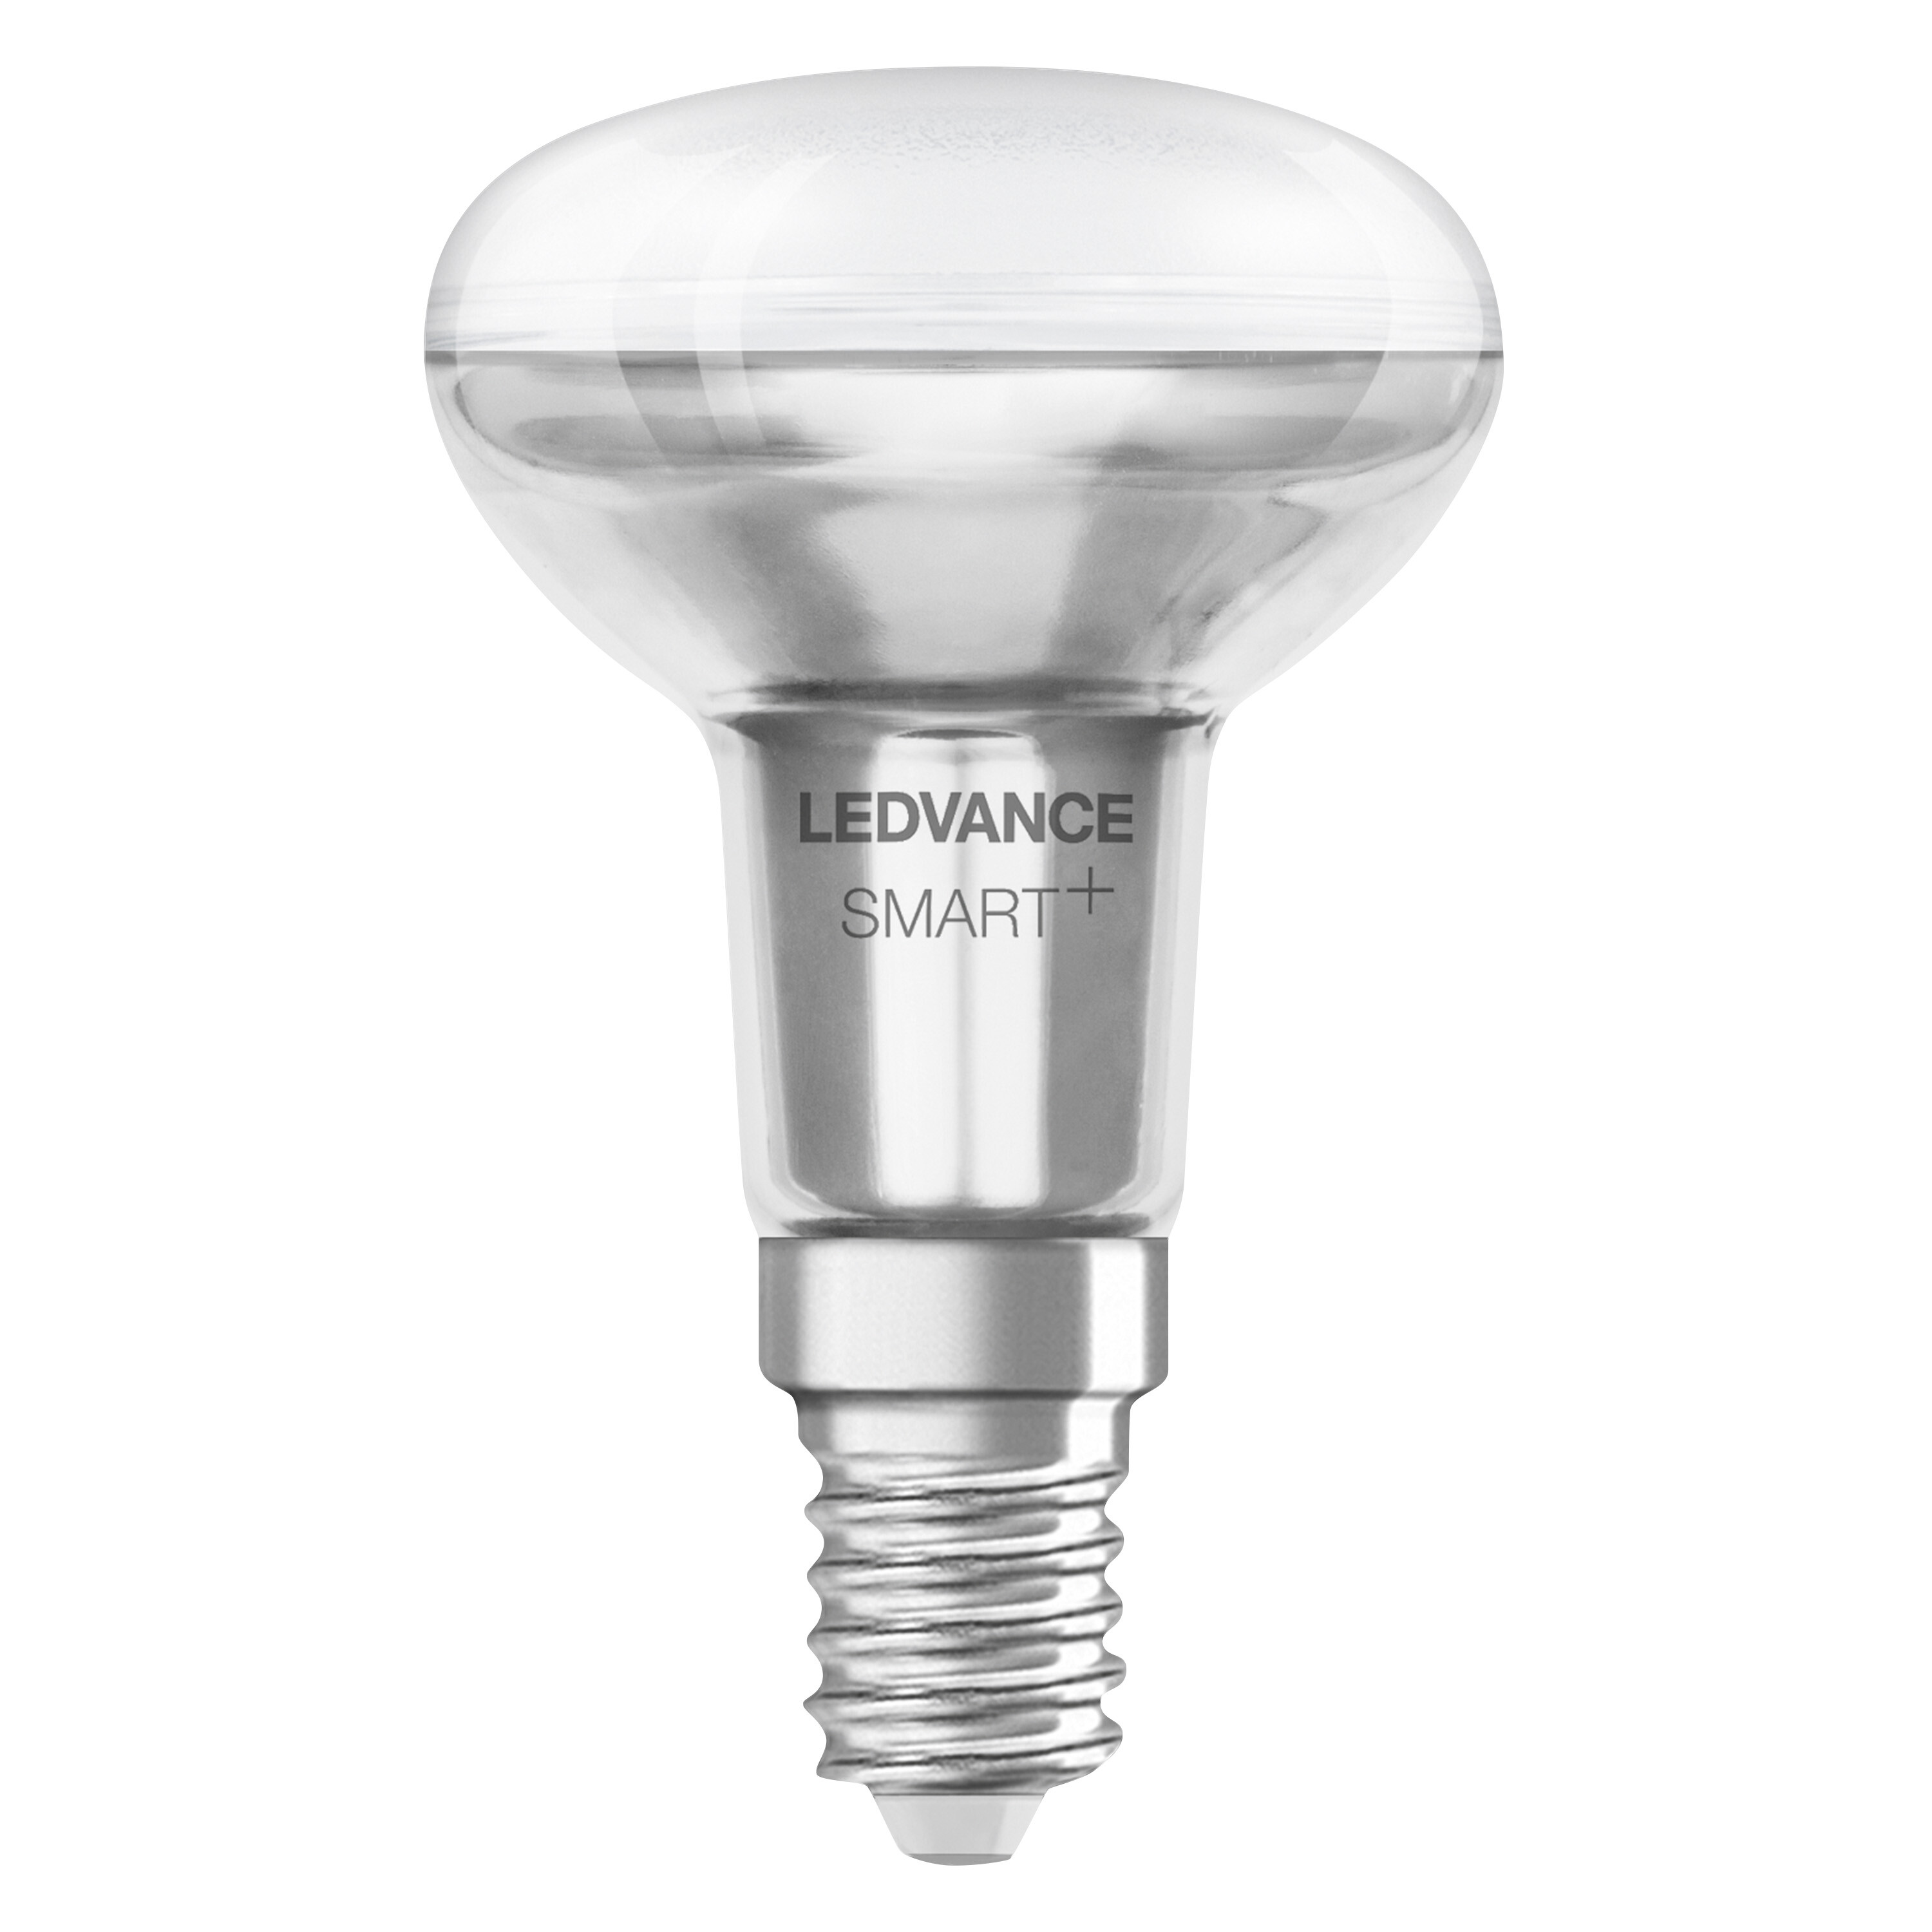 Tunable CONCENTRA R50 2700…6500 3W 40 SPOT SMART+ LED E14 Lampe White Lichtfarbe LEDVANCE änderbar